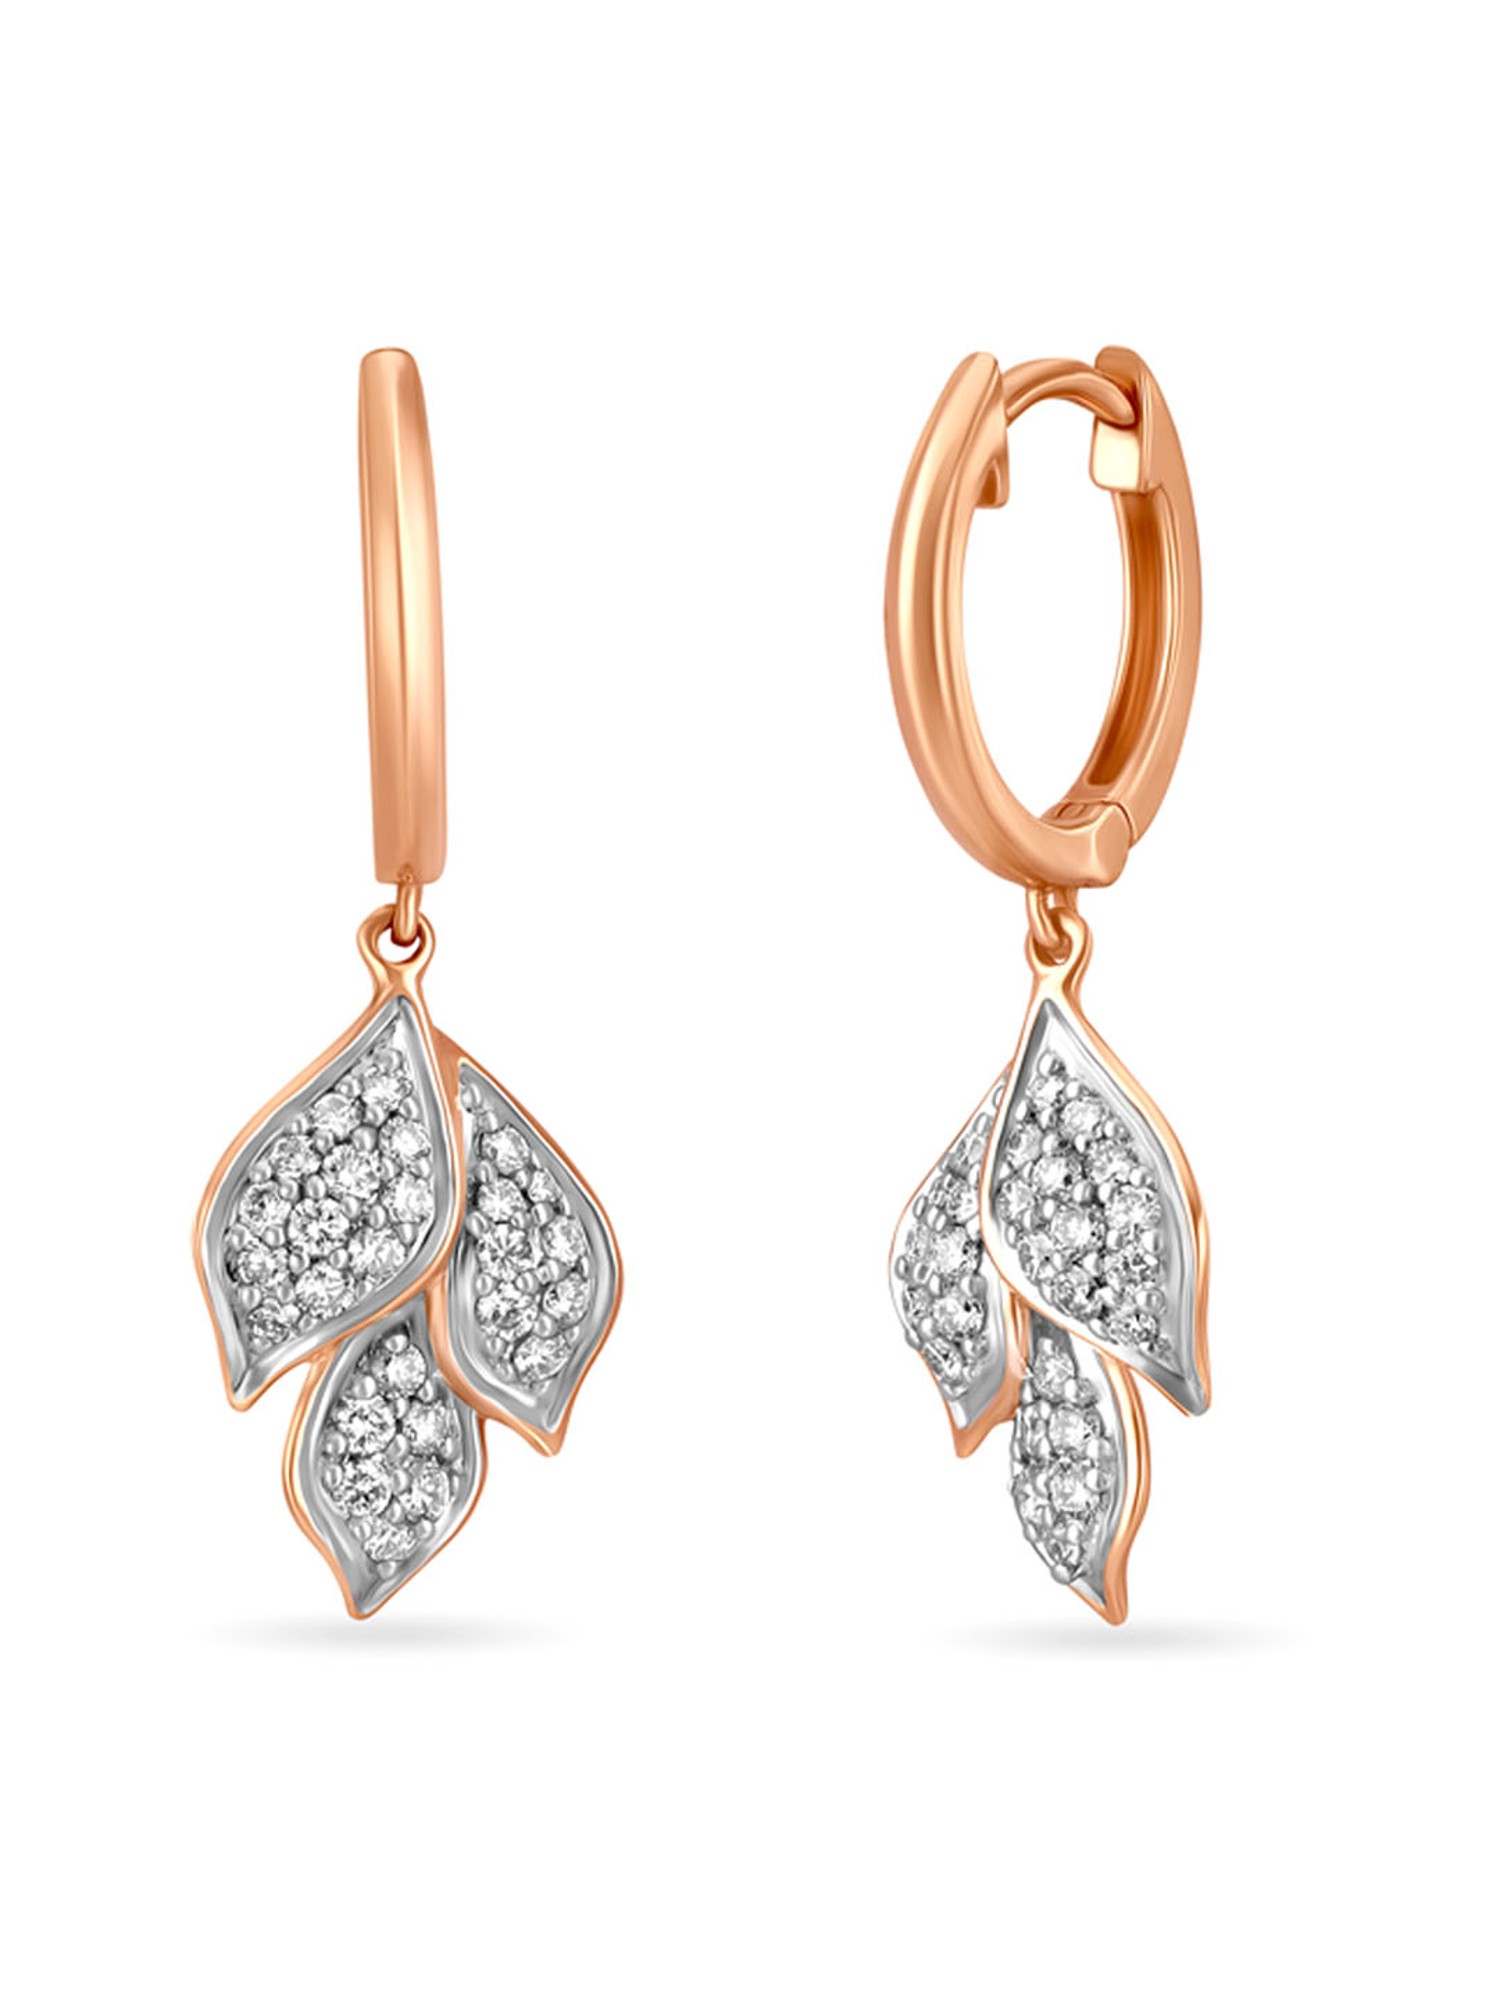 Dazzling Earrings In Diamond  14K Rose Gold By Lagu Bandhu  Lagu Bandhu